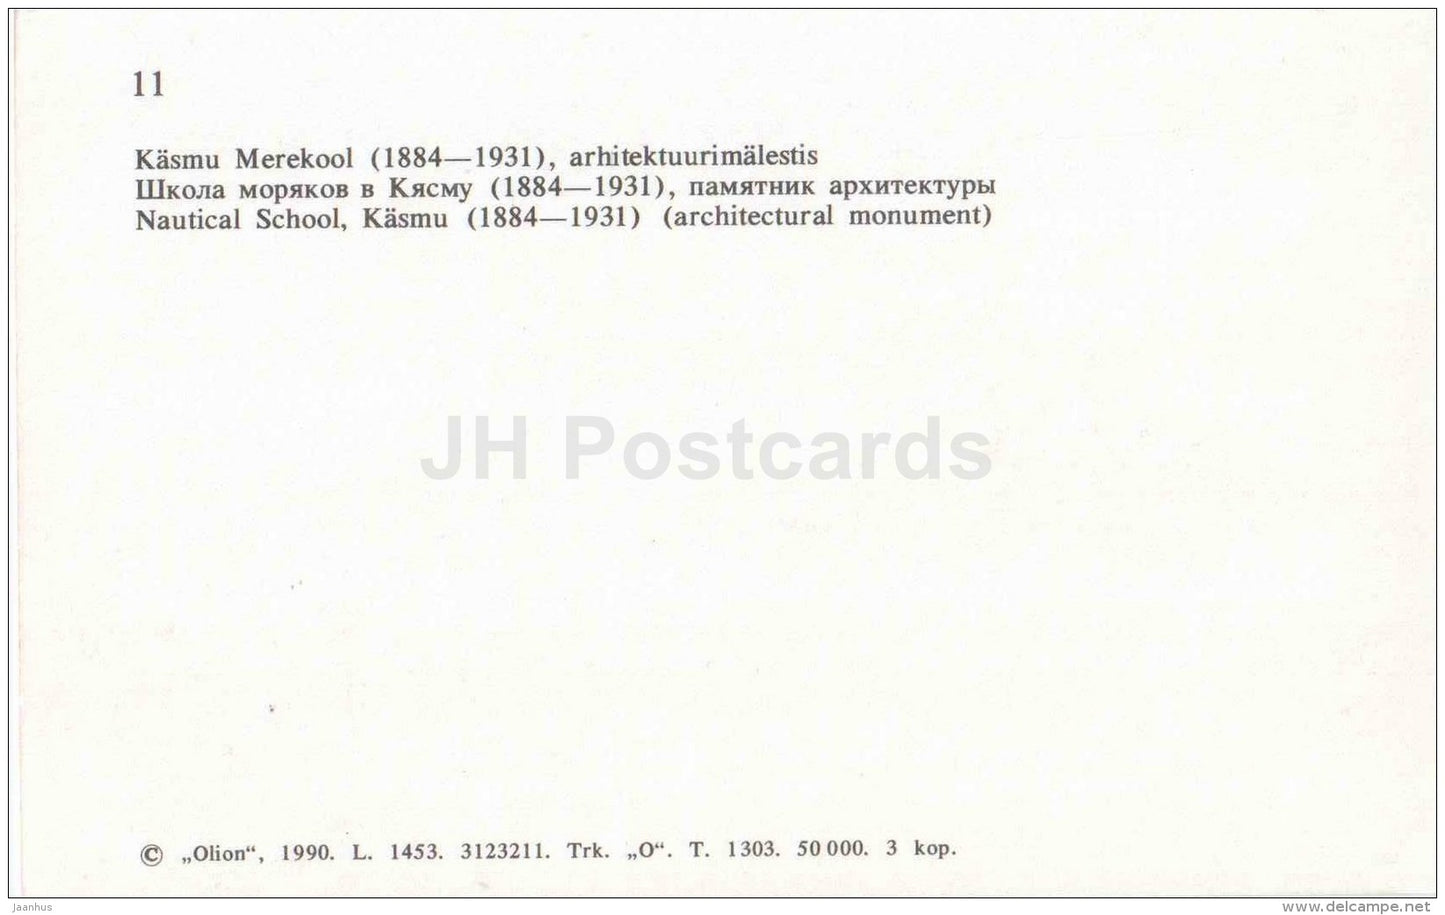 Nautical school in Käsmu - Kaspervieck - Virumaa - OLD POSTCARD REPRODUCTION! - 1990 - Estonia USSR - unused - JH Postcards